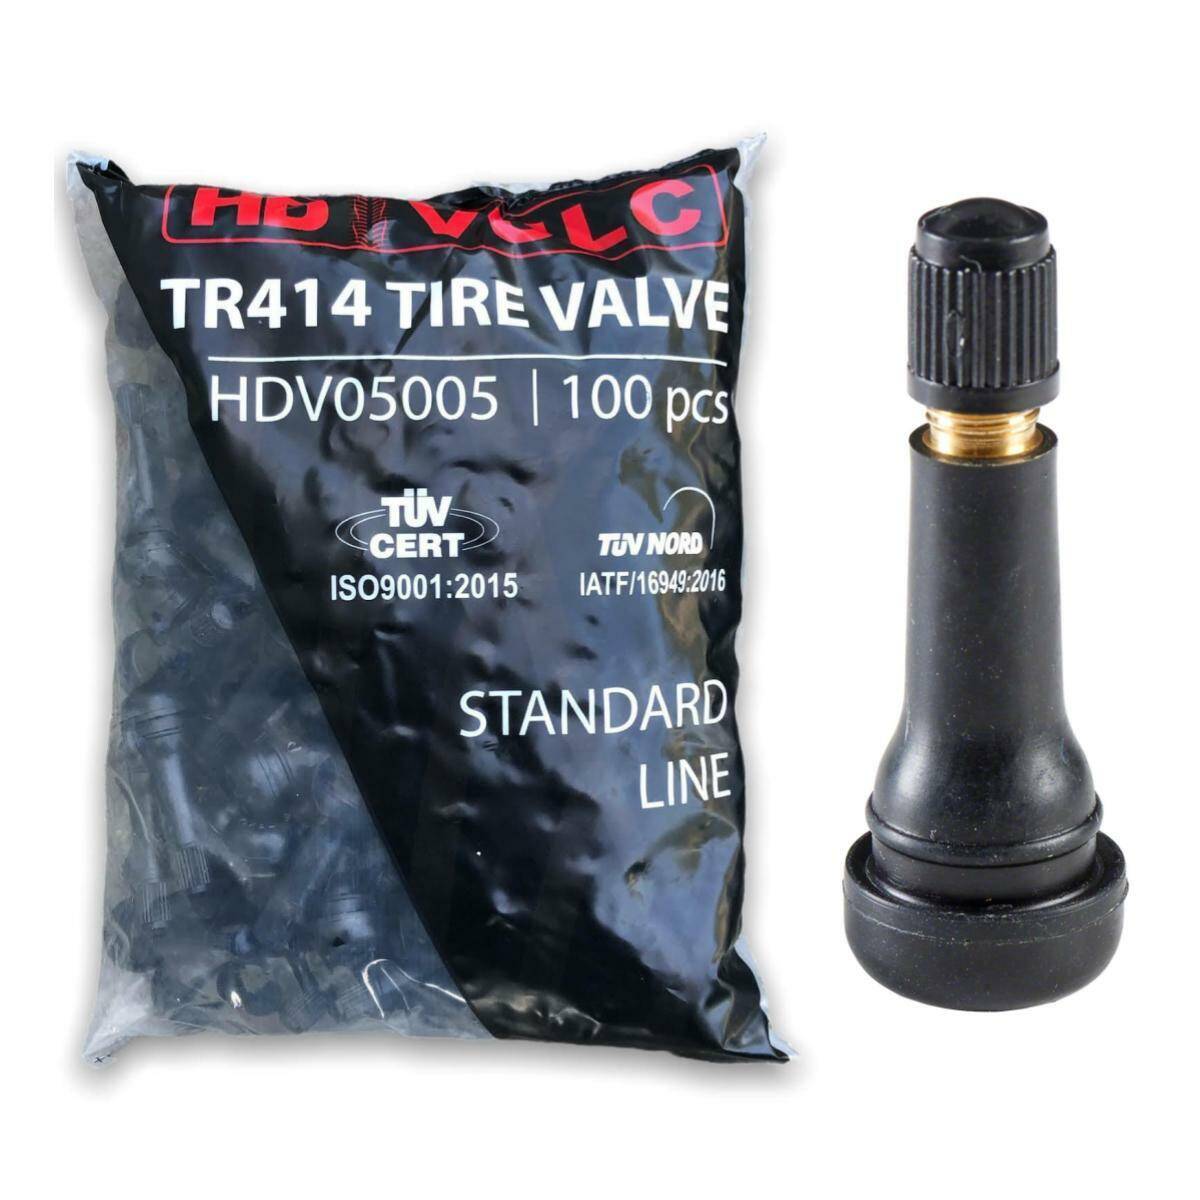 Snap-In tire valve  TR414 HDVULC STDANDARD